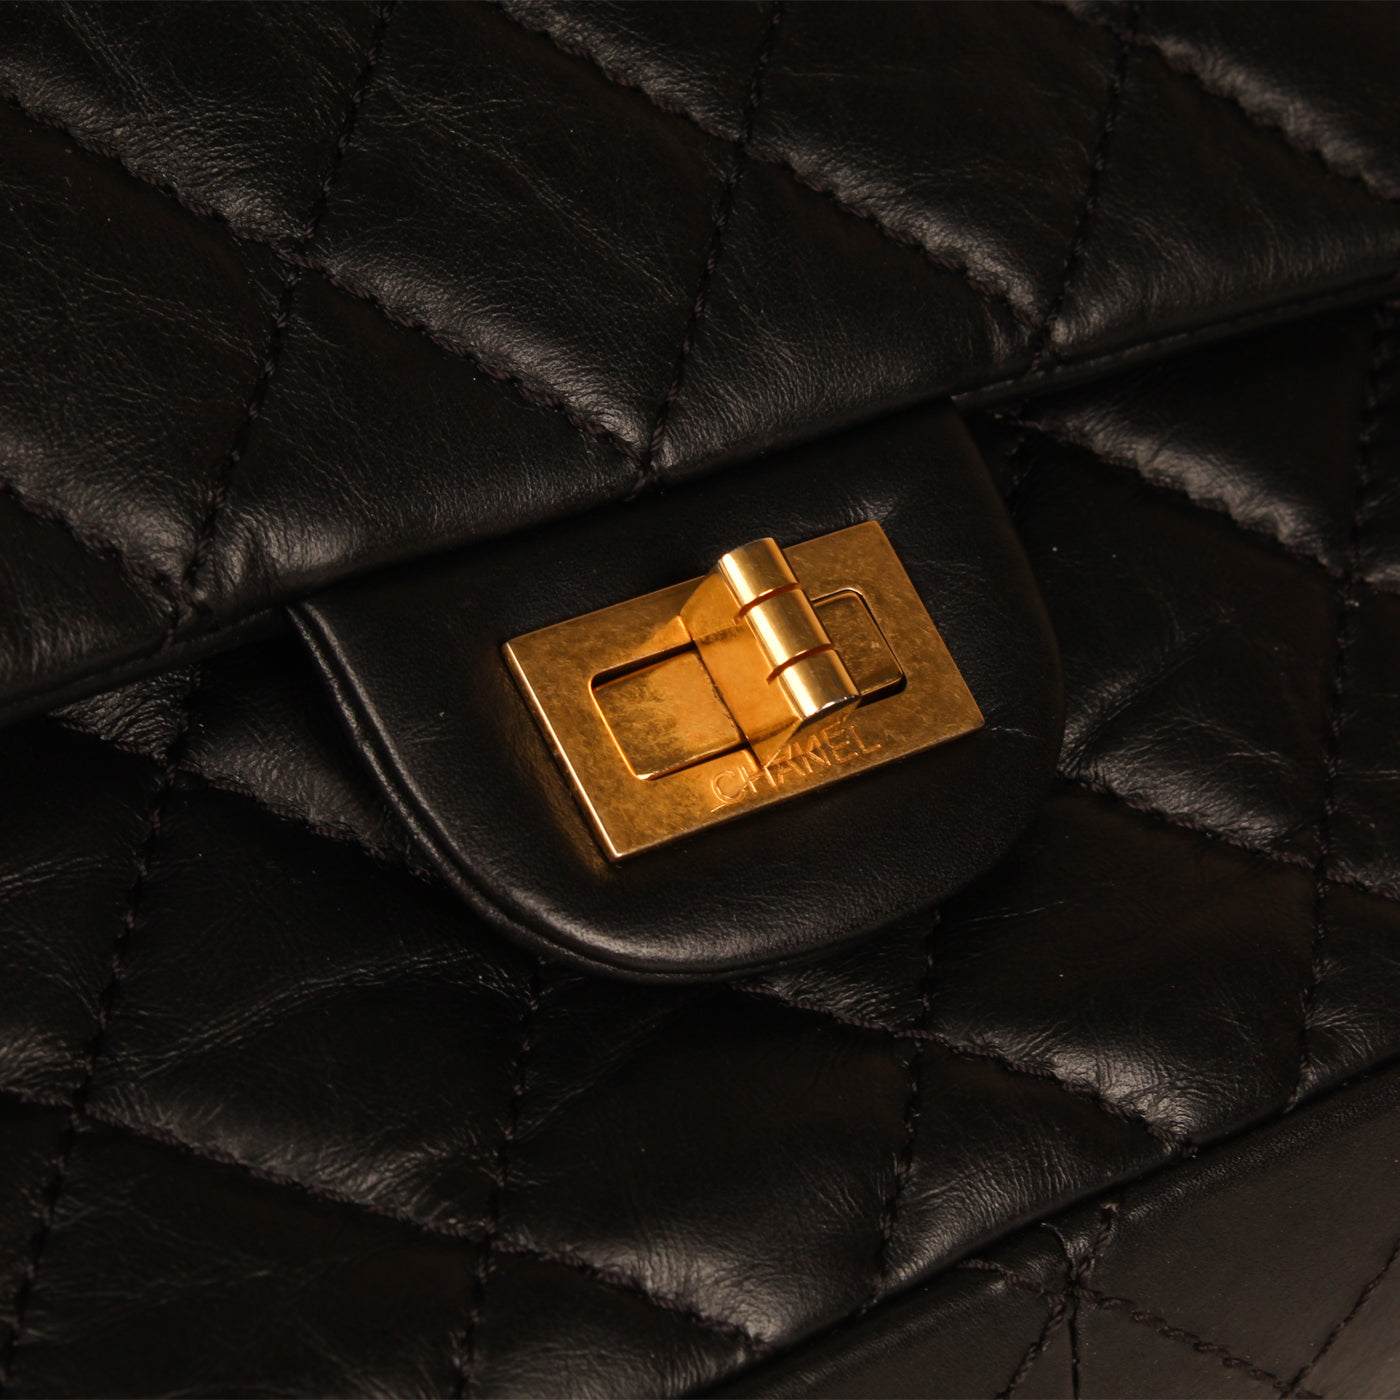 black gold chanel bag vintage